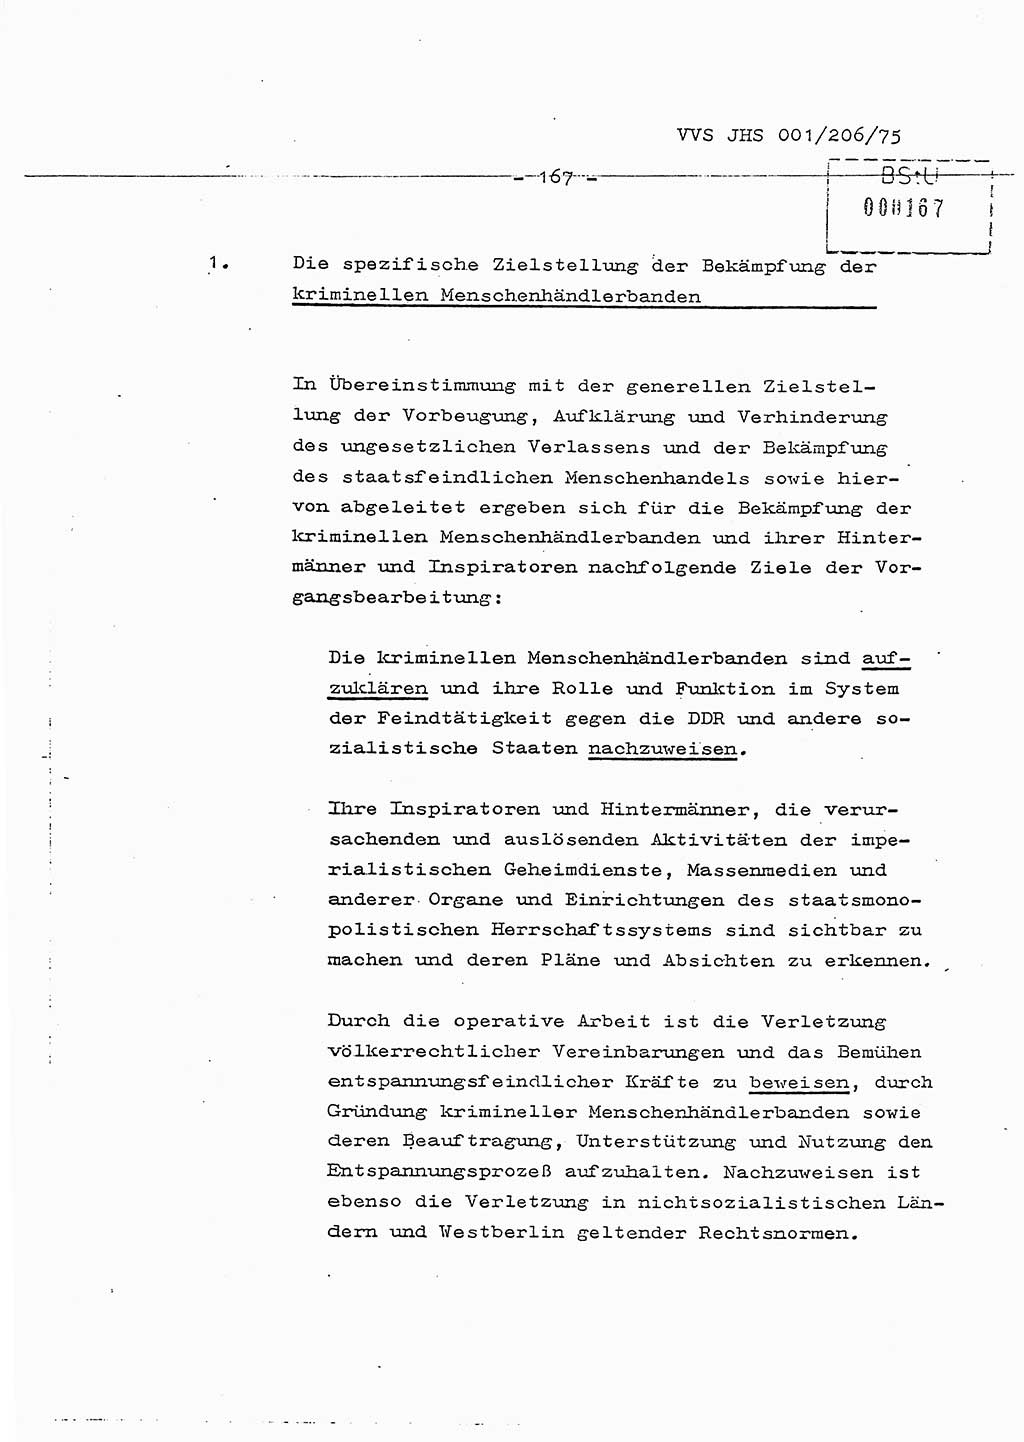 Dissertation Generalmajor Manfred Hummitzsch (Leiter der BV Leipzig), Generalmajor Heinz Fiedler (HA Ⅵ), Oberst Rolf Fister (HA Ⅸ), Ministerium für Staatssicherheit (MfS) [Deutsche Demokratische Republik (DDR)], Juristische Hochschule (JHS), Vertrauliche Verschlußsache (VVS) 001-206/75, Potsdam 1975, Seite 167 (Diss. MfS DDR JHS VVS 001-206/75 1975, S. 167)